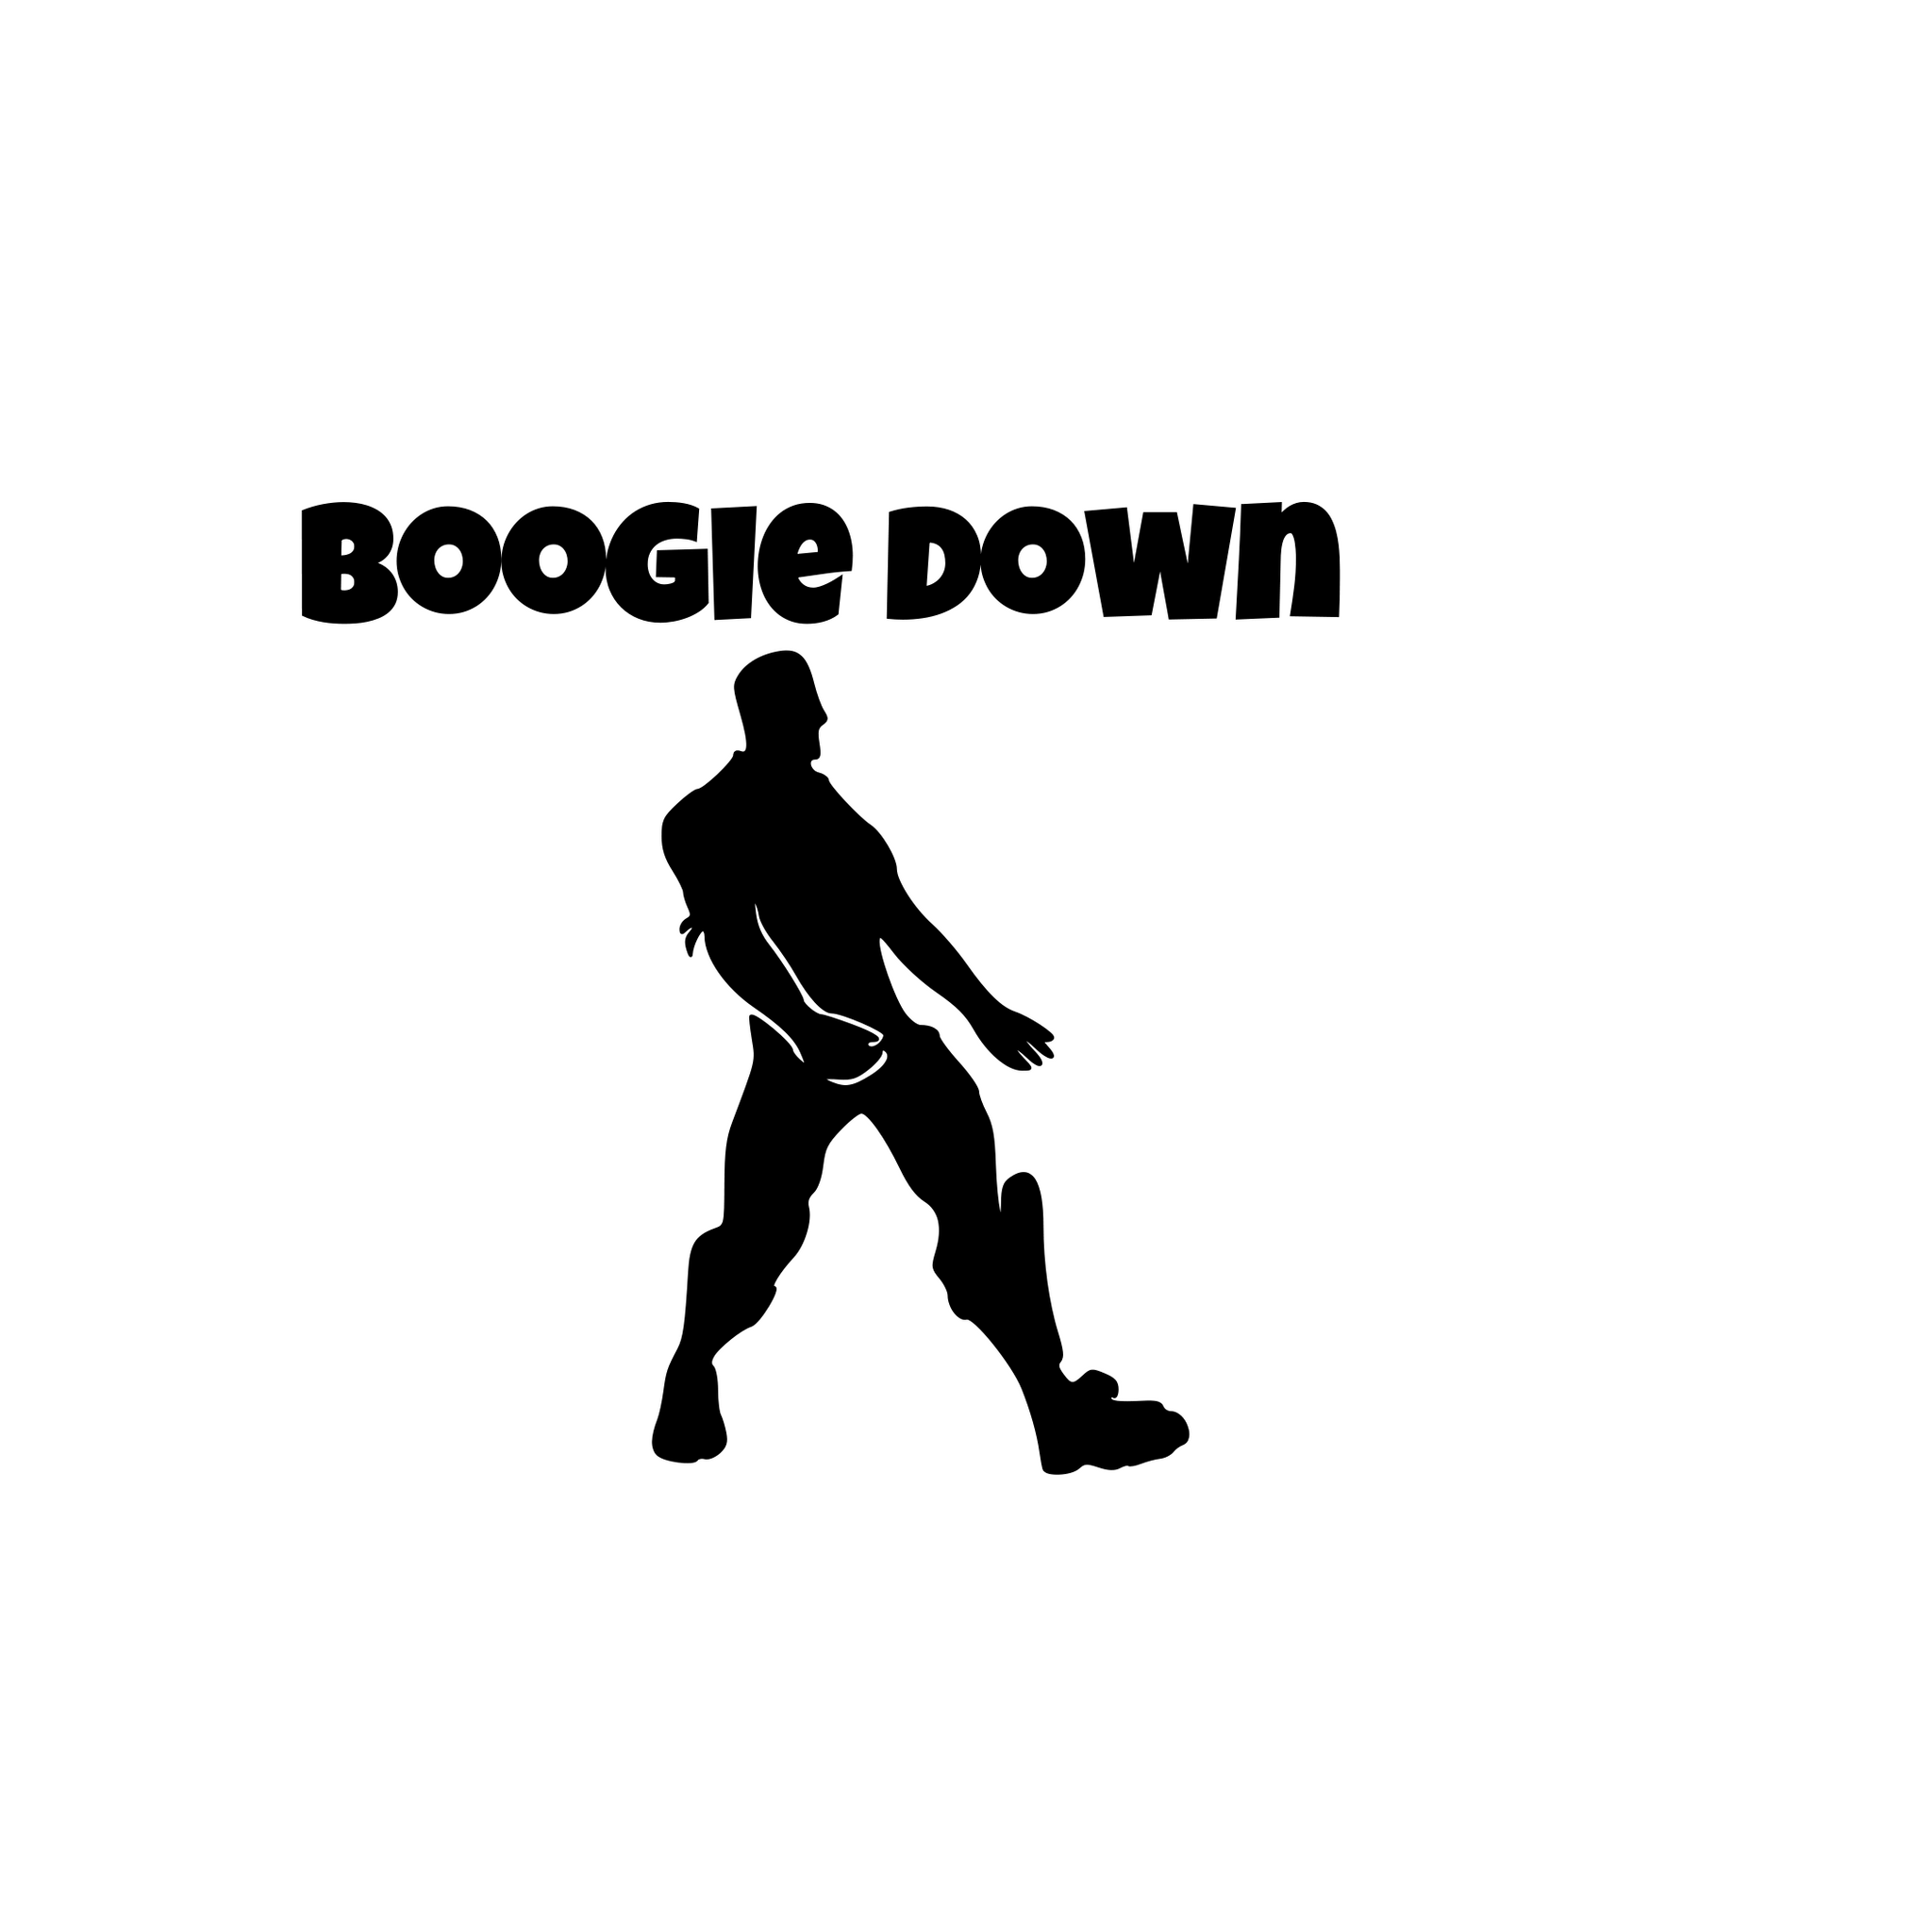 Boogie down dance. Boogie down танец. Картинки буги бота.